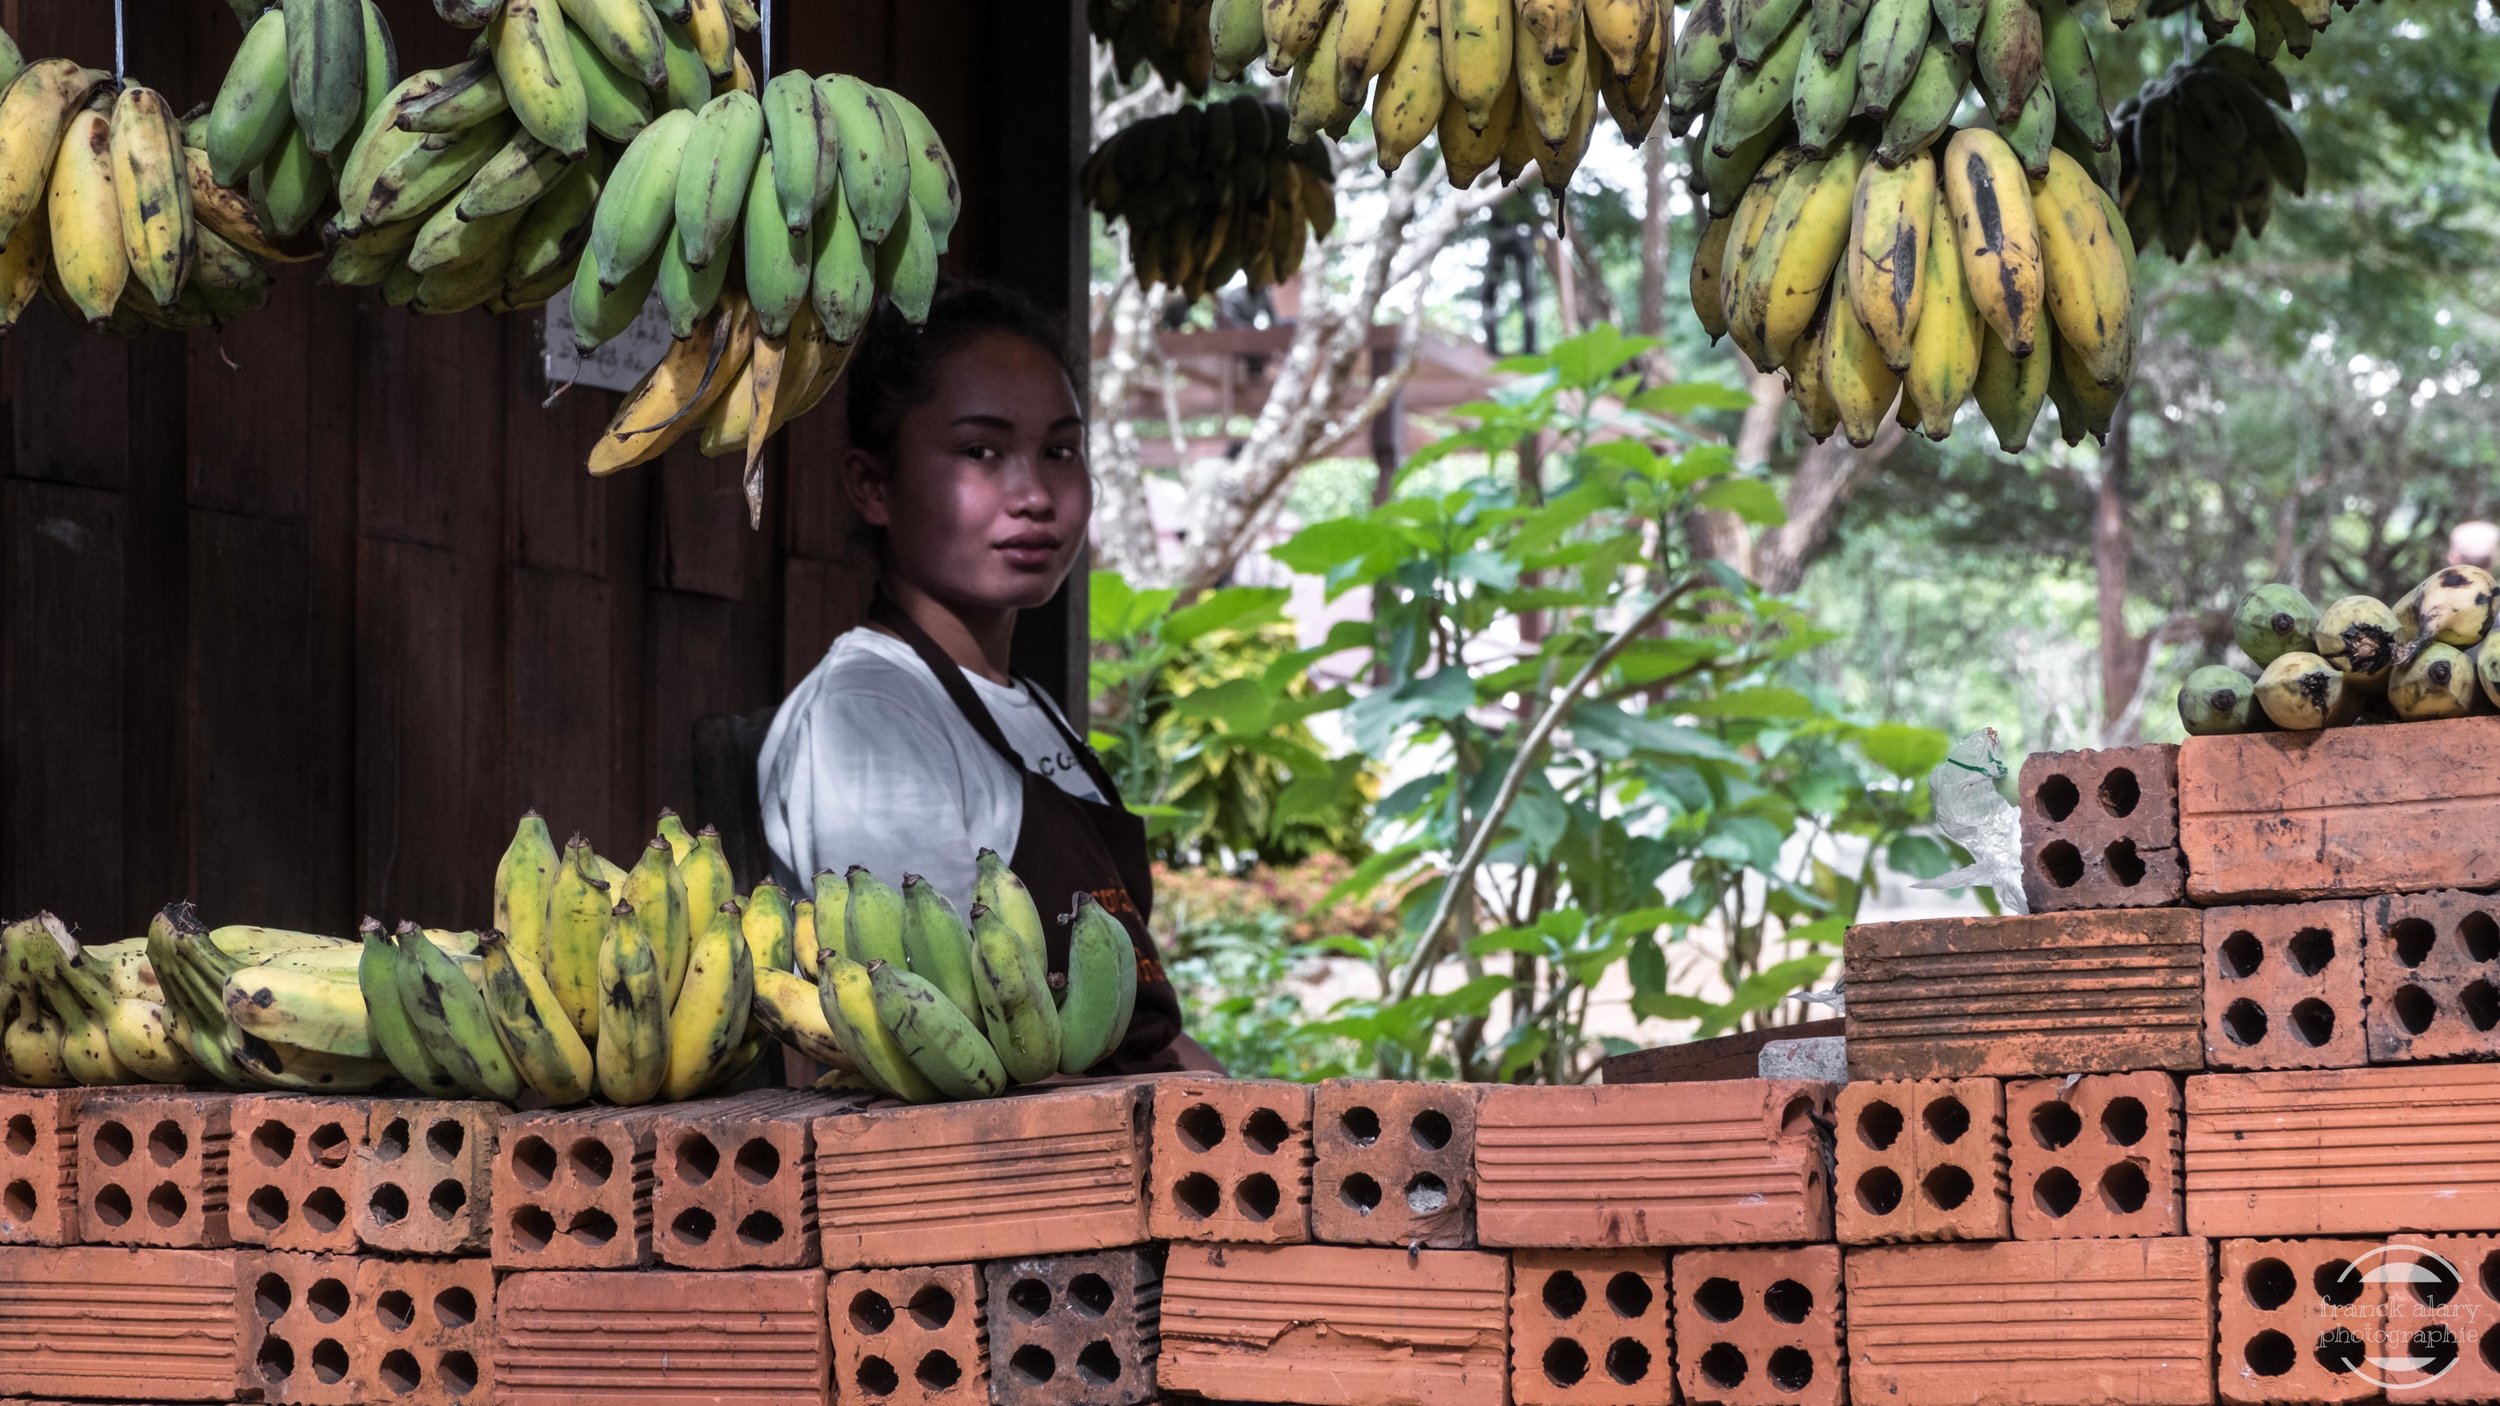   Les bananes du Laos   La production de bananes a explosé au nord du Laos du fait d'énormes investissements chinois et au prix d'une utilisation massive de pesticides qui représente un risque pour les populations locales.&nbsp; La création de nouvel